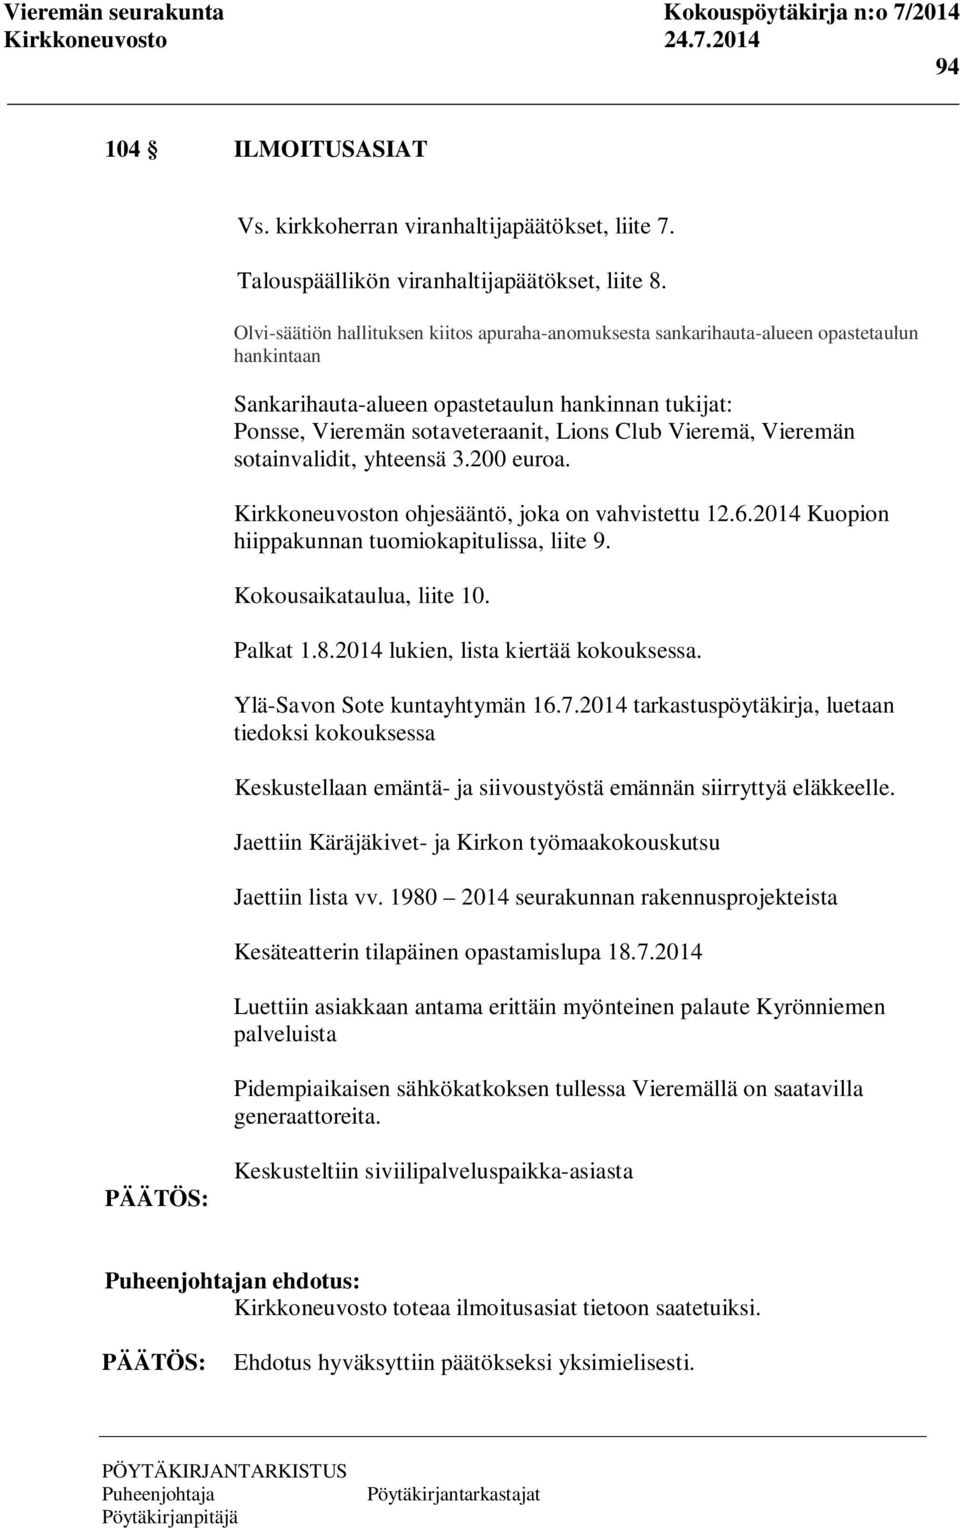 Vieremä, Vieremän sotainvalidit, yhteensä 3.200 euroa. Kirkkoneuvoston ohjesääntö, joka on vahvistettu 12.6.2014 Kuopion hiippakunnan tuomiokapitulissa, liite 9. Kokousaikataulua, liite 10. Palkat 1.